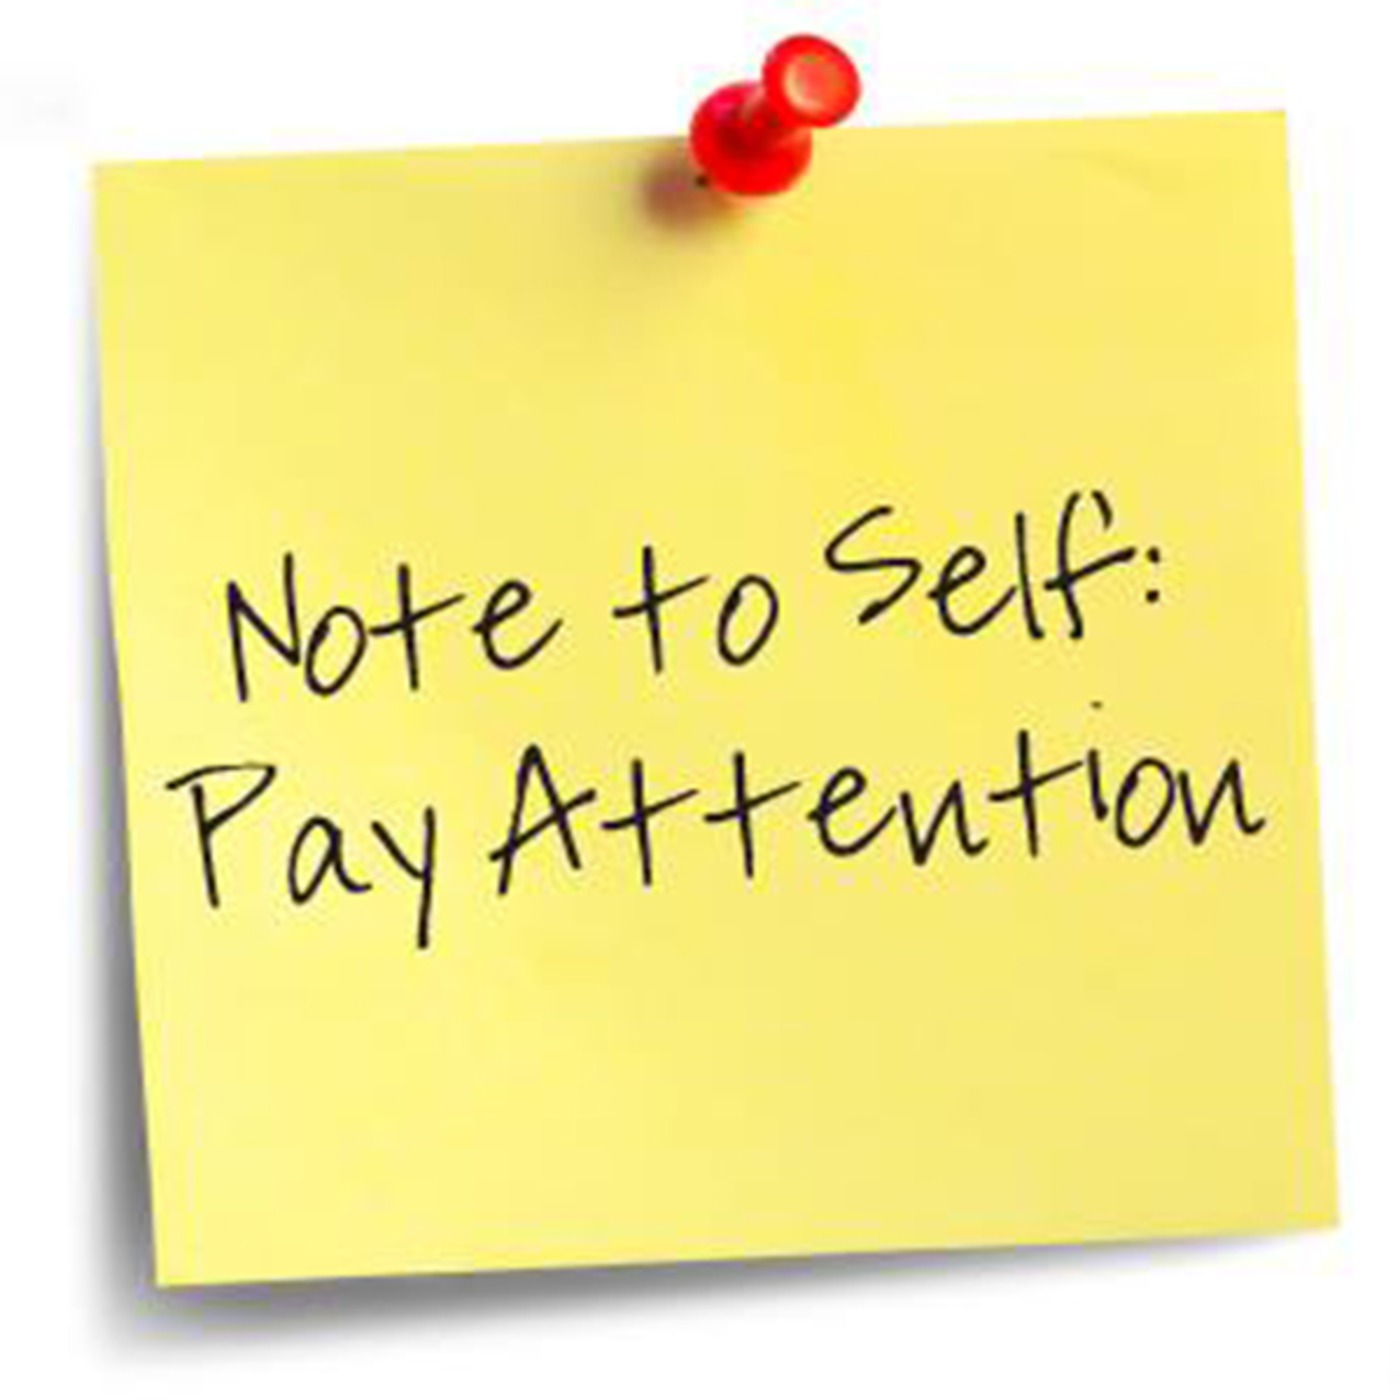 Get attention pay attention. Pay attention to. Paying attention. Please pay attention. Paid attention.